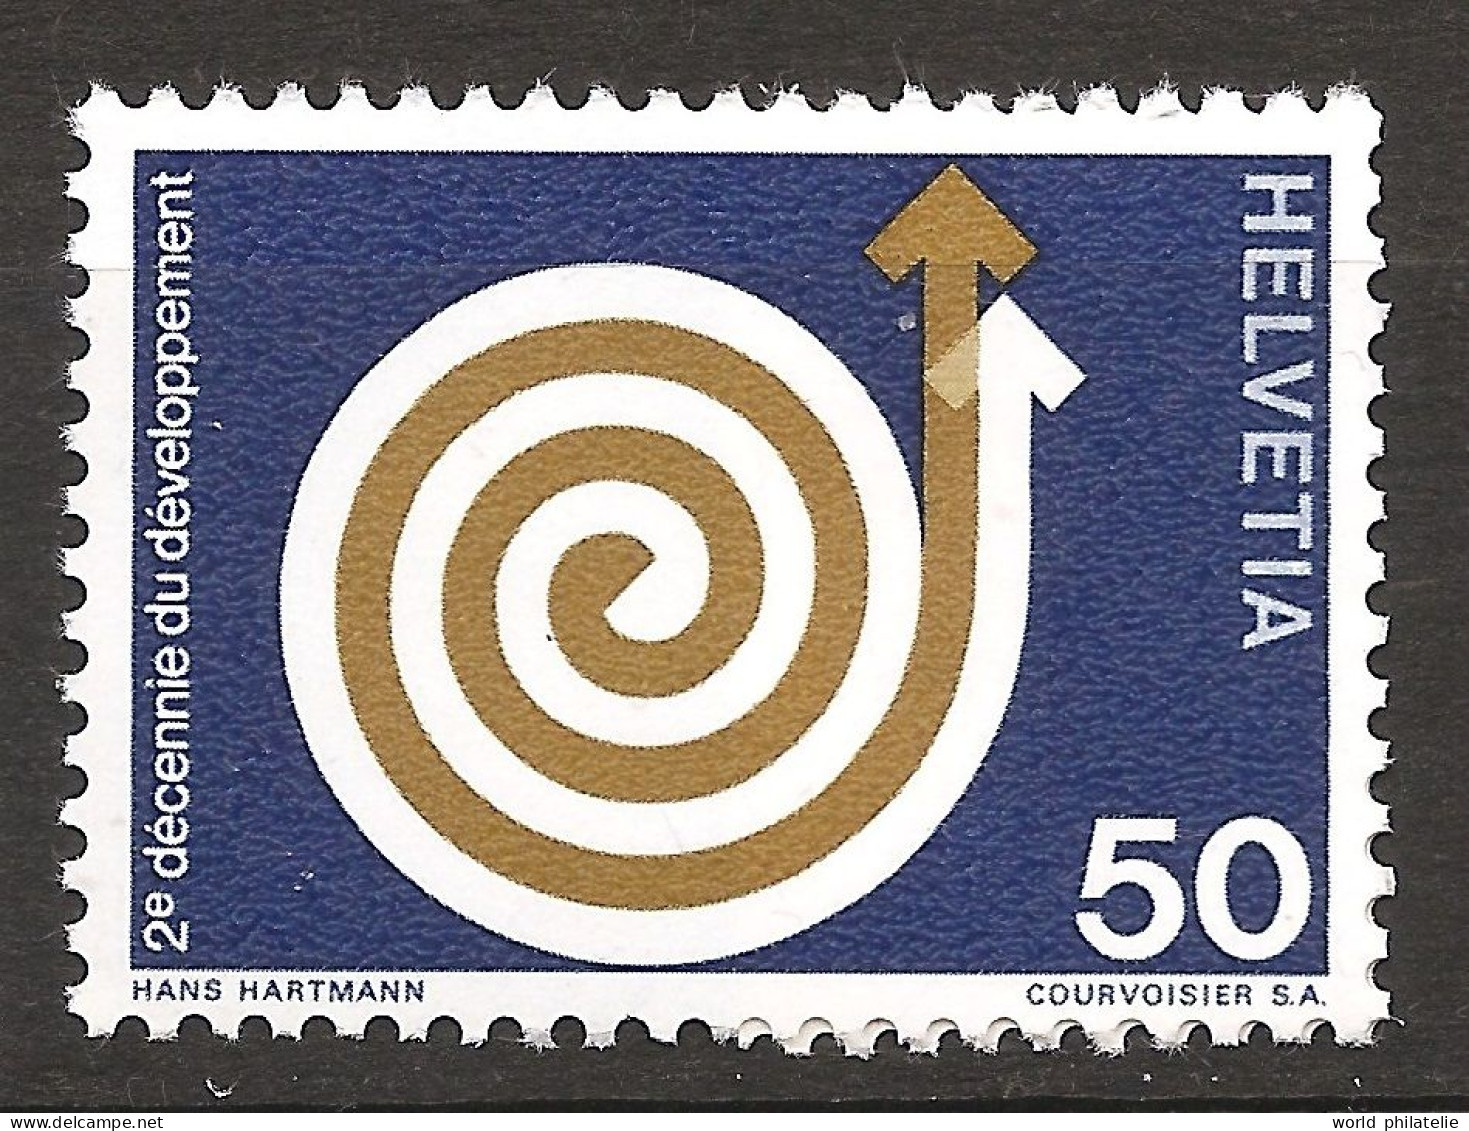 Suisse Helvetia 1971 N° 876 ** Décennie Du Développement, Flèches, Escargot, Doré - Neufs